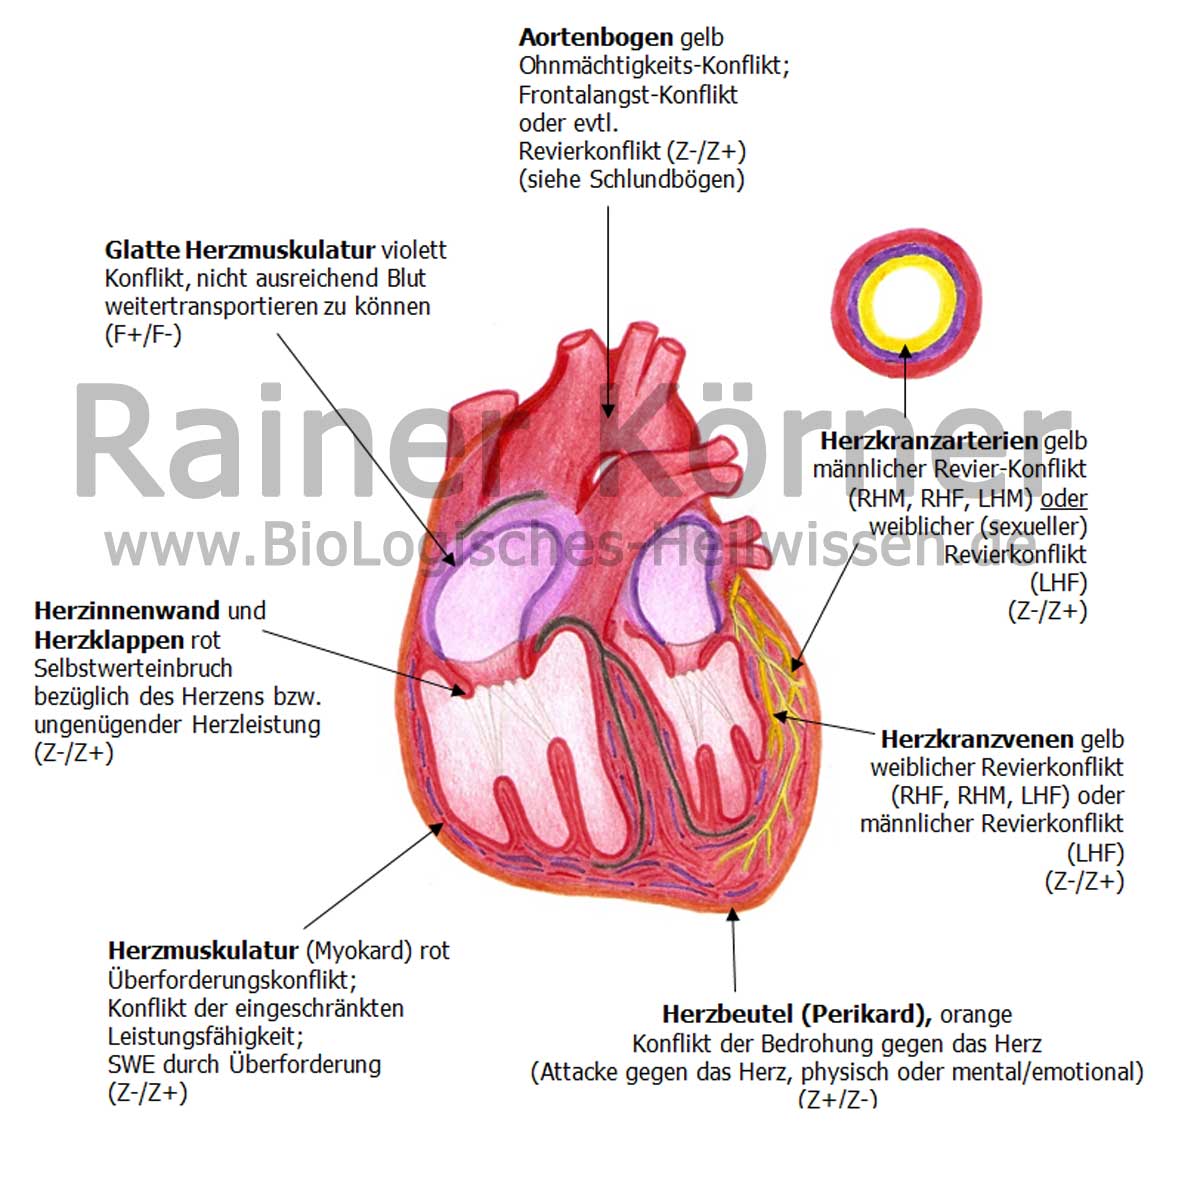 Herz BioLogisches Heilwissen